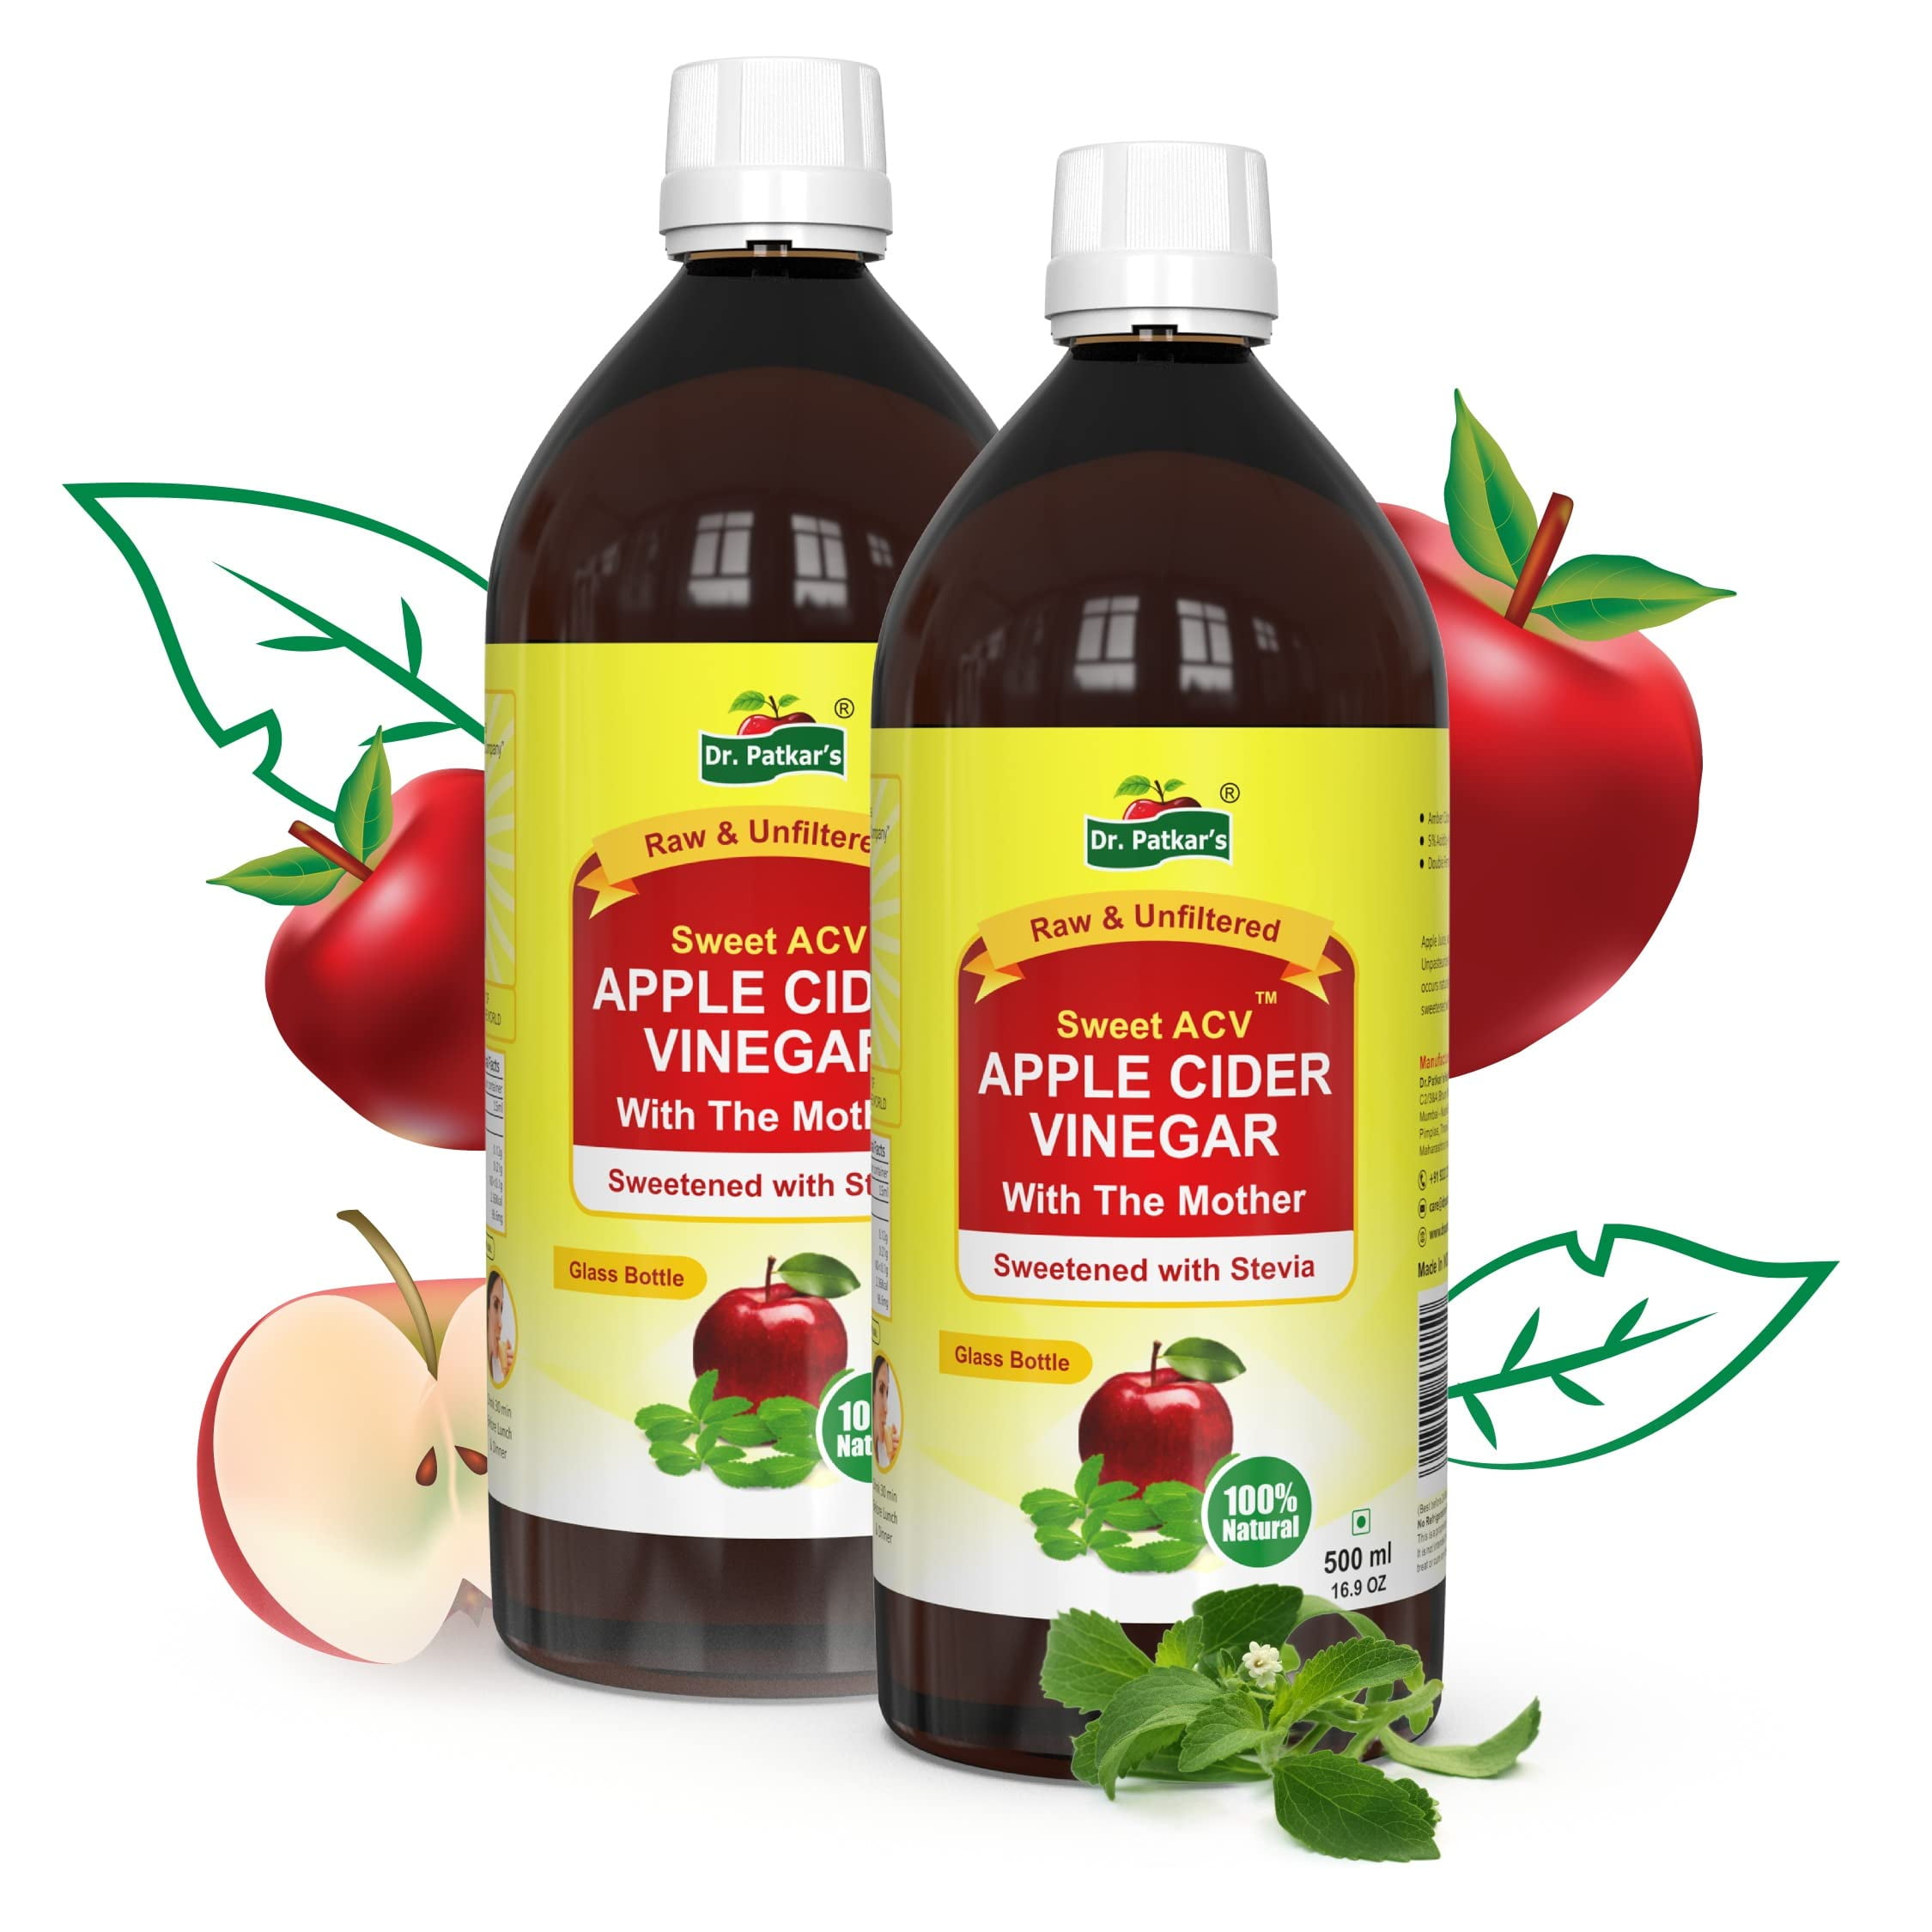 Dr Patkar S Apple Cider Vinegar With